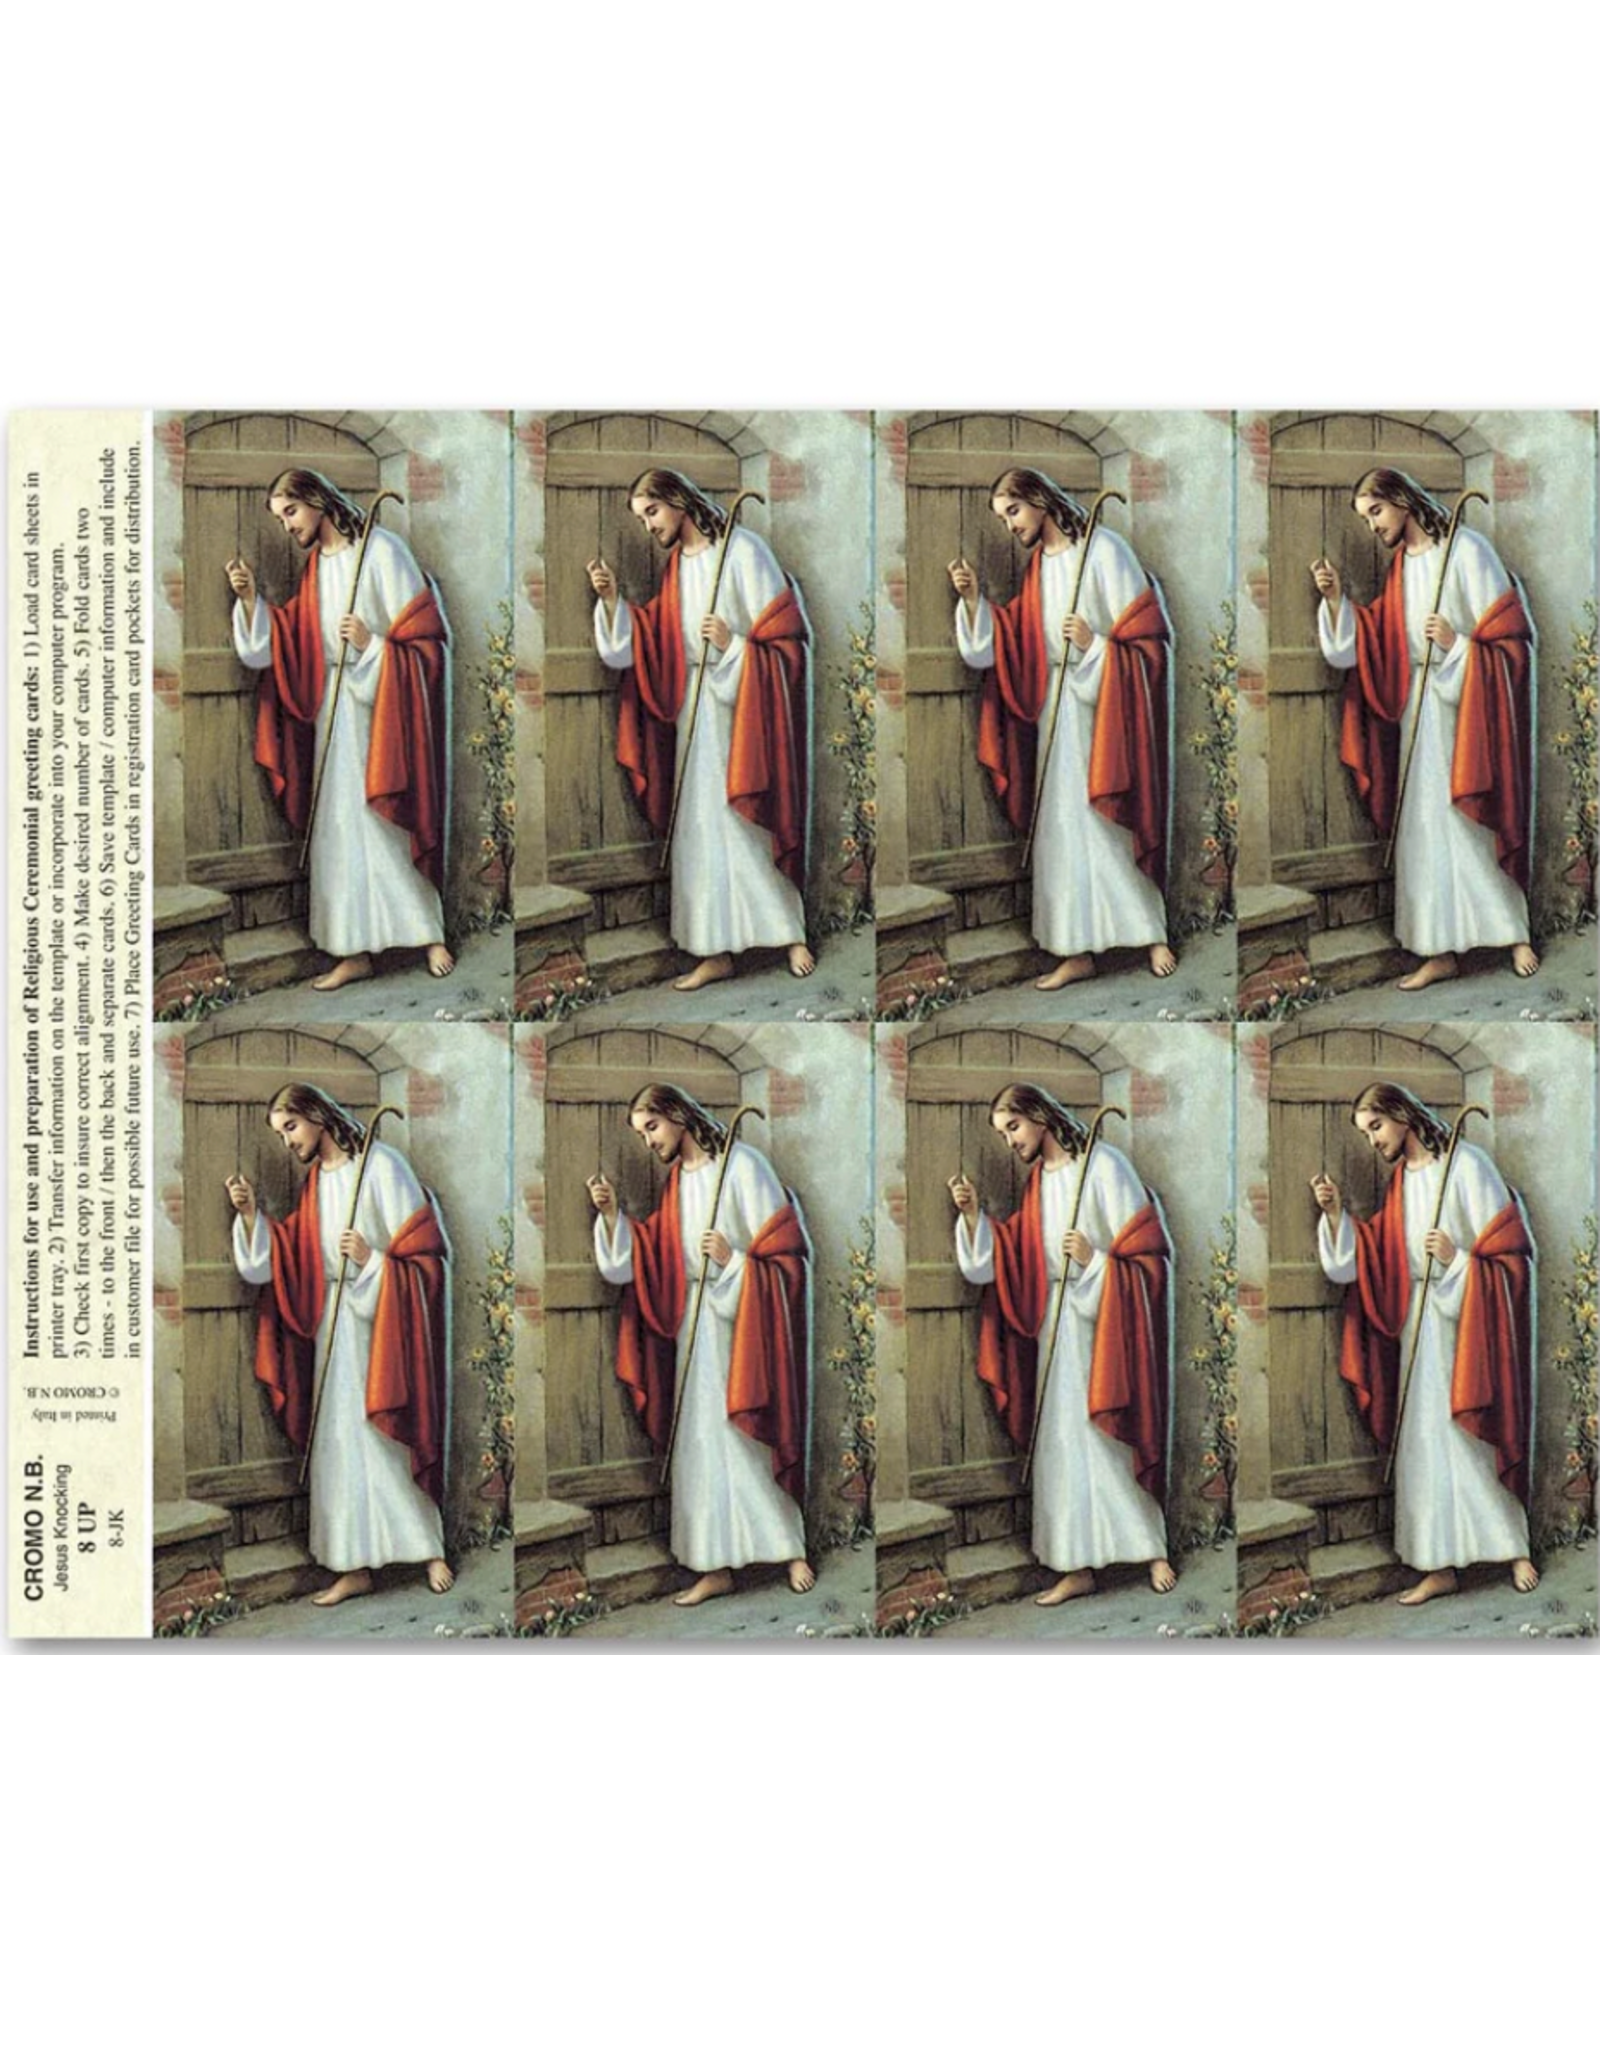 San Francis Holy Cards - Laser - Jesus Knocking (Sheet of 8)